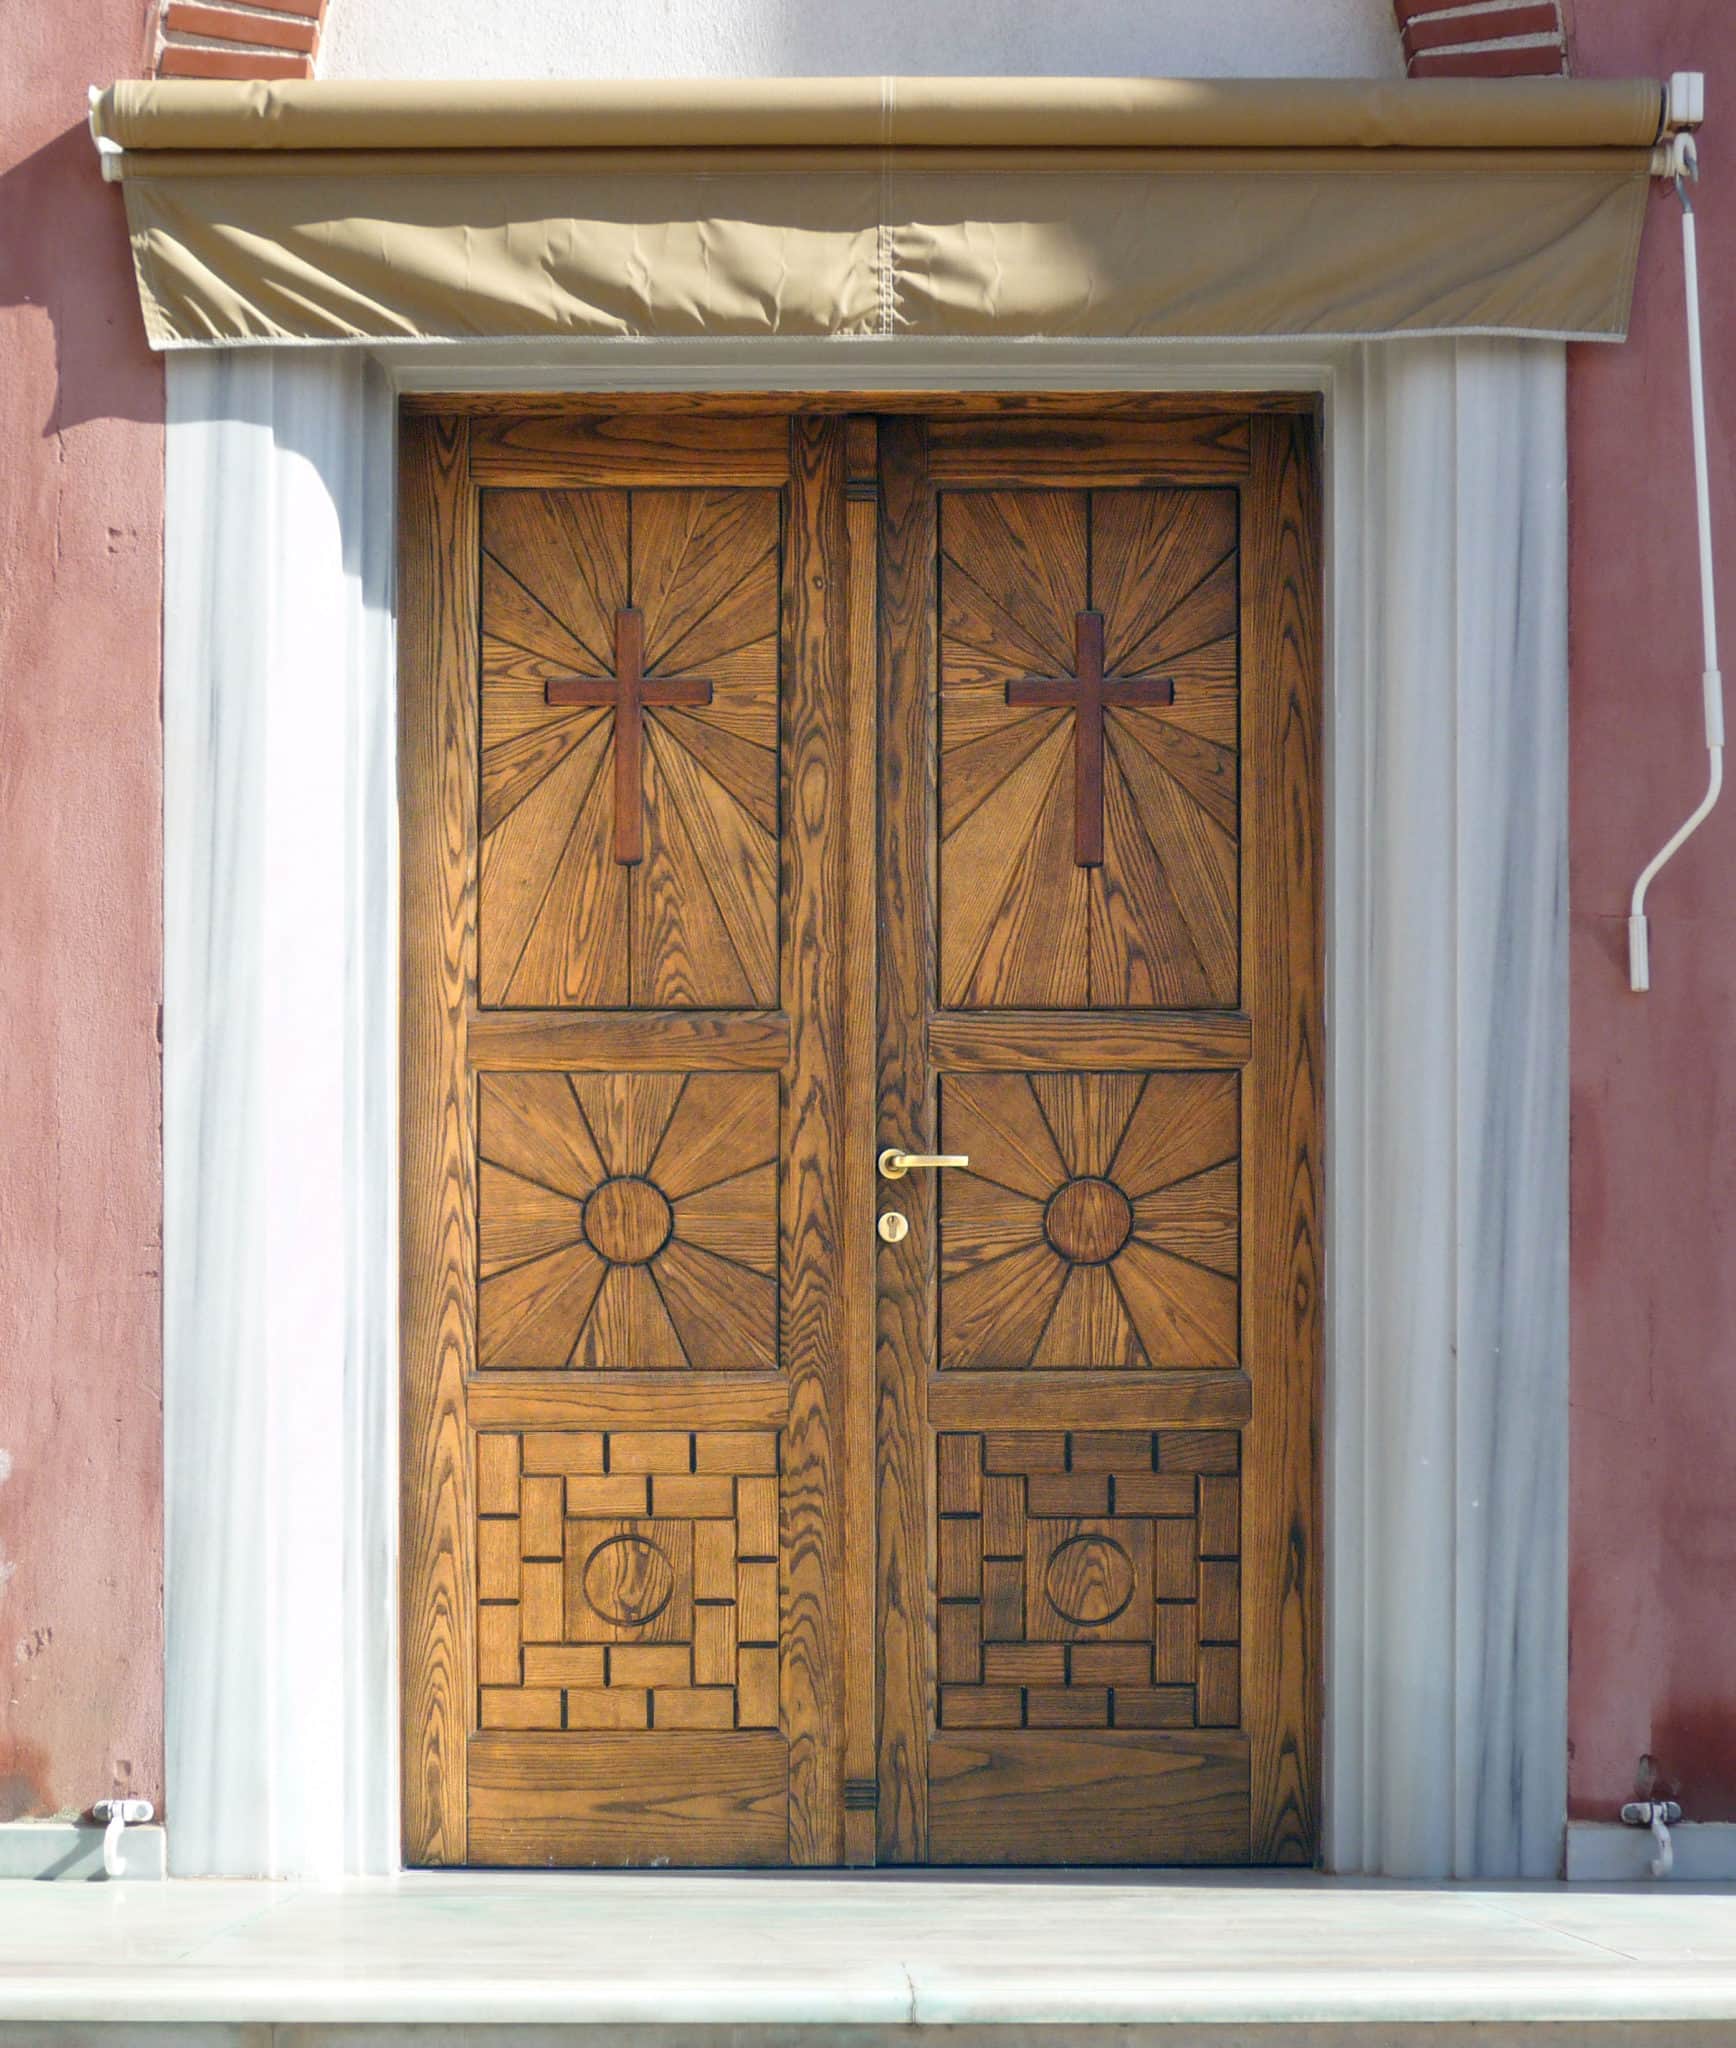 εκκλησιαστική πόρτα με ειδικό σχέδιο